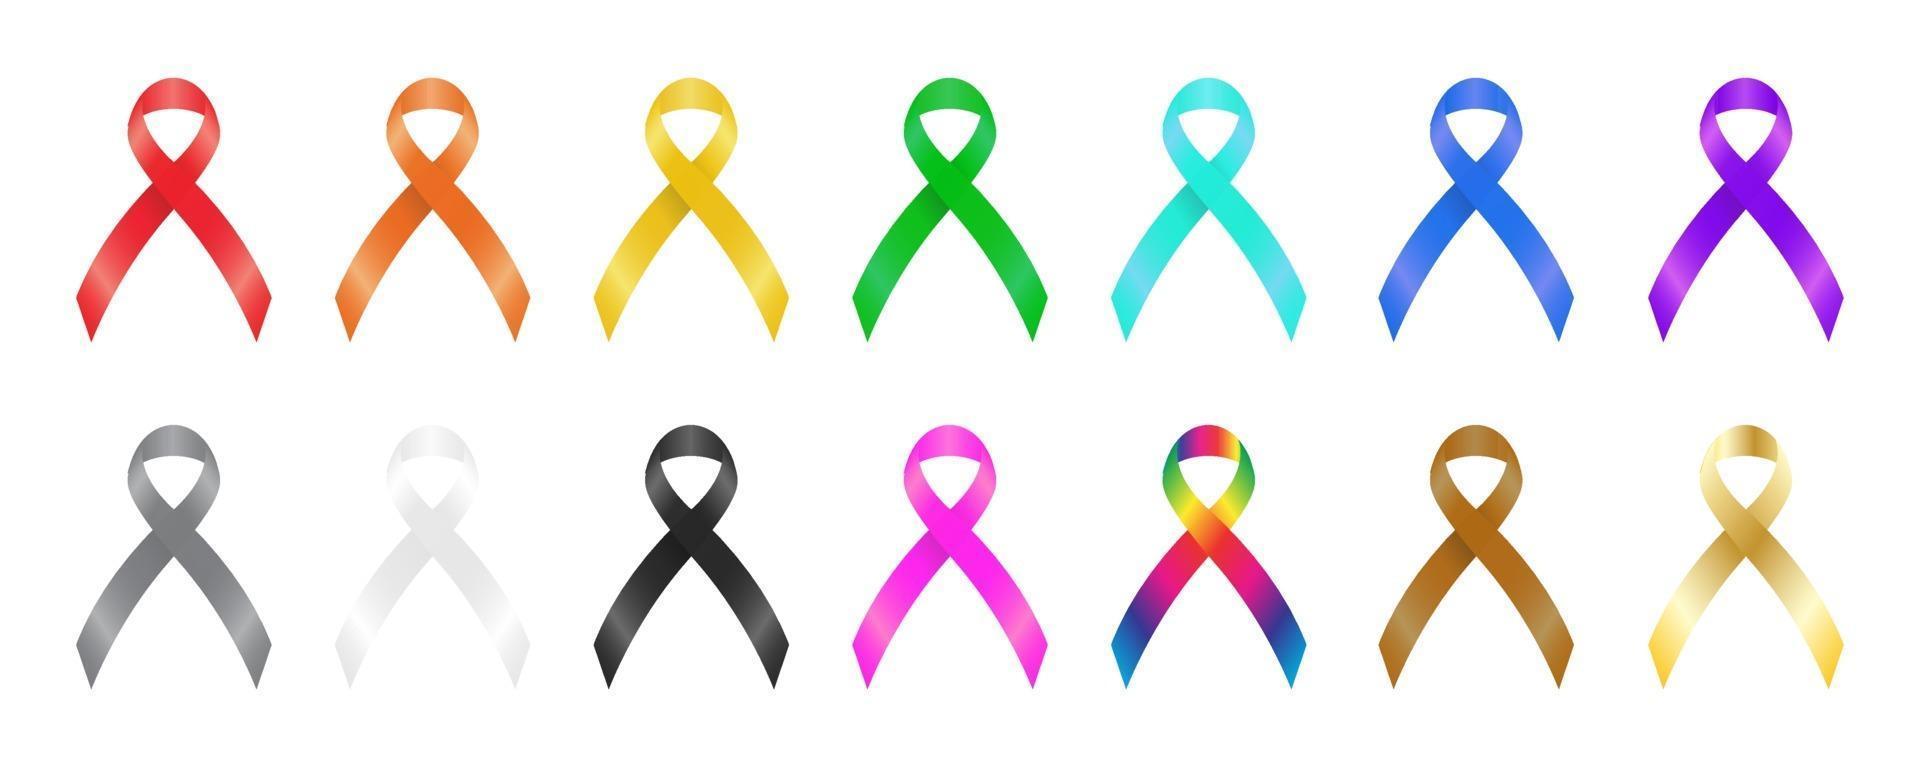 Colorful awareness ribbons vector